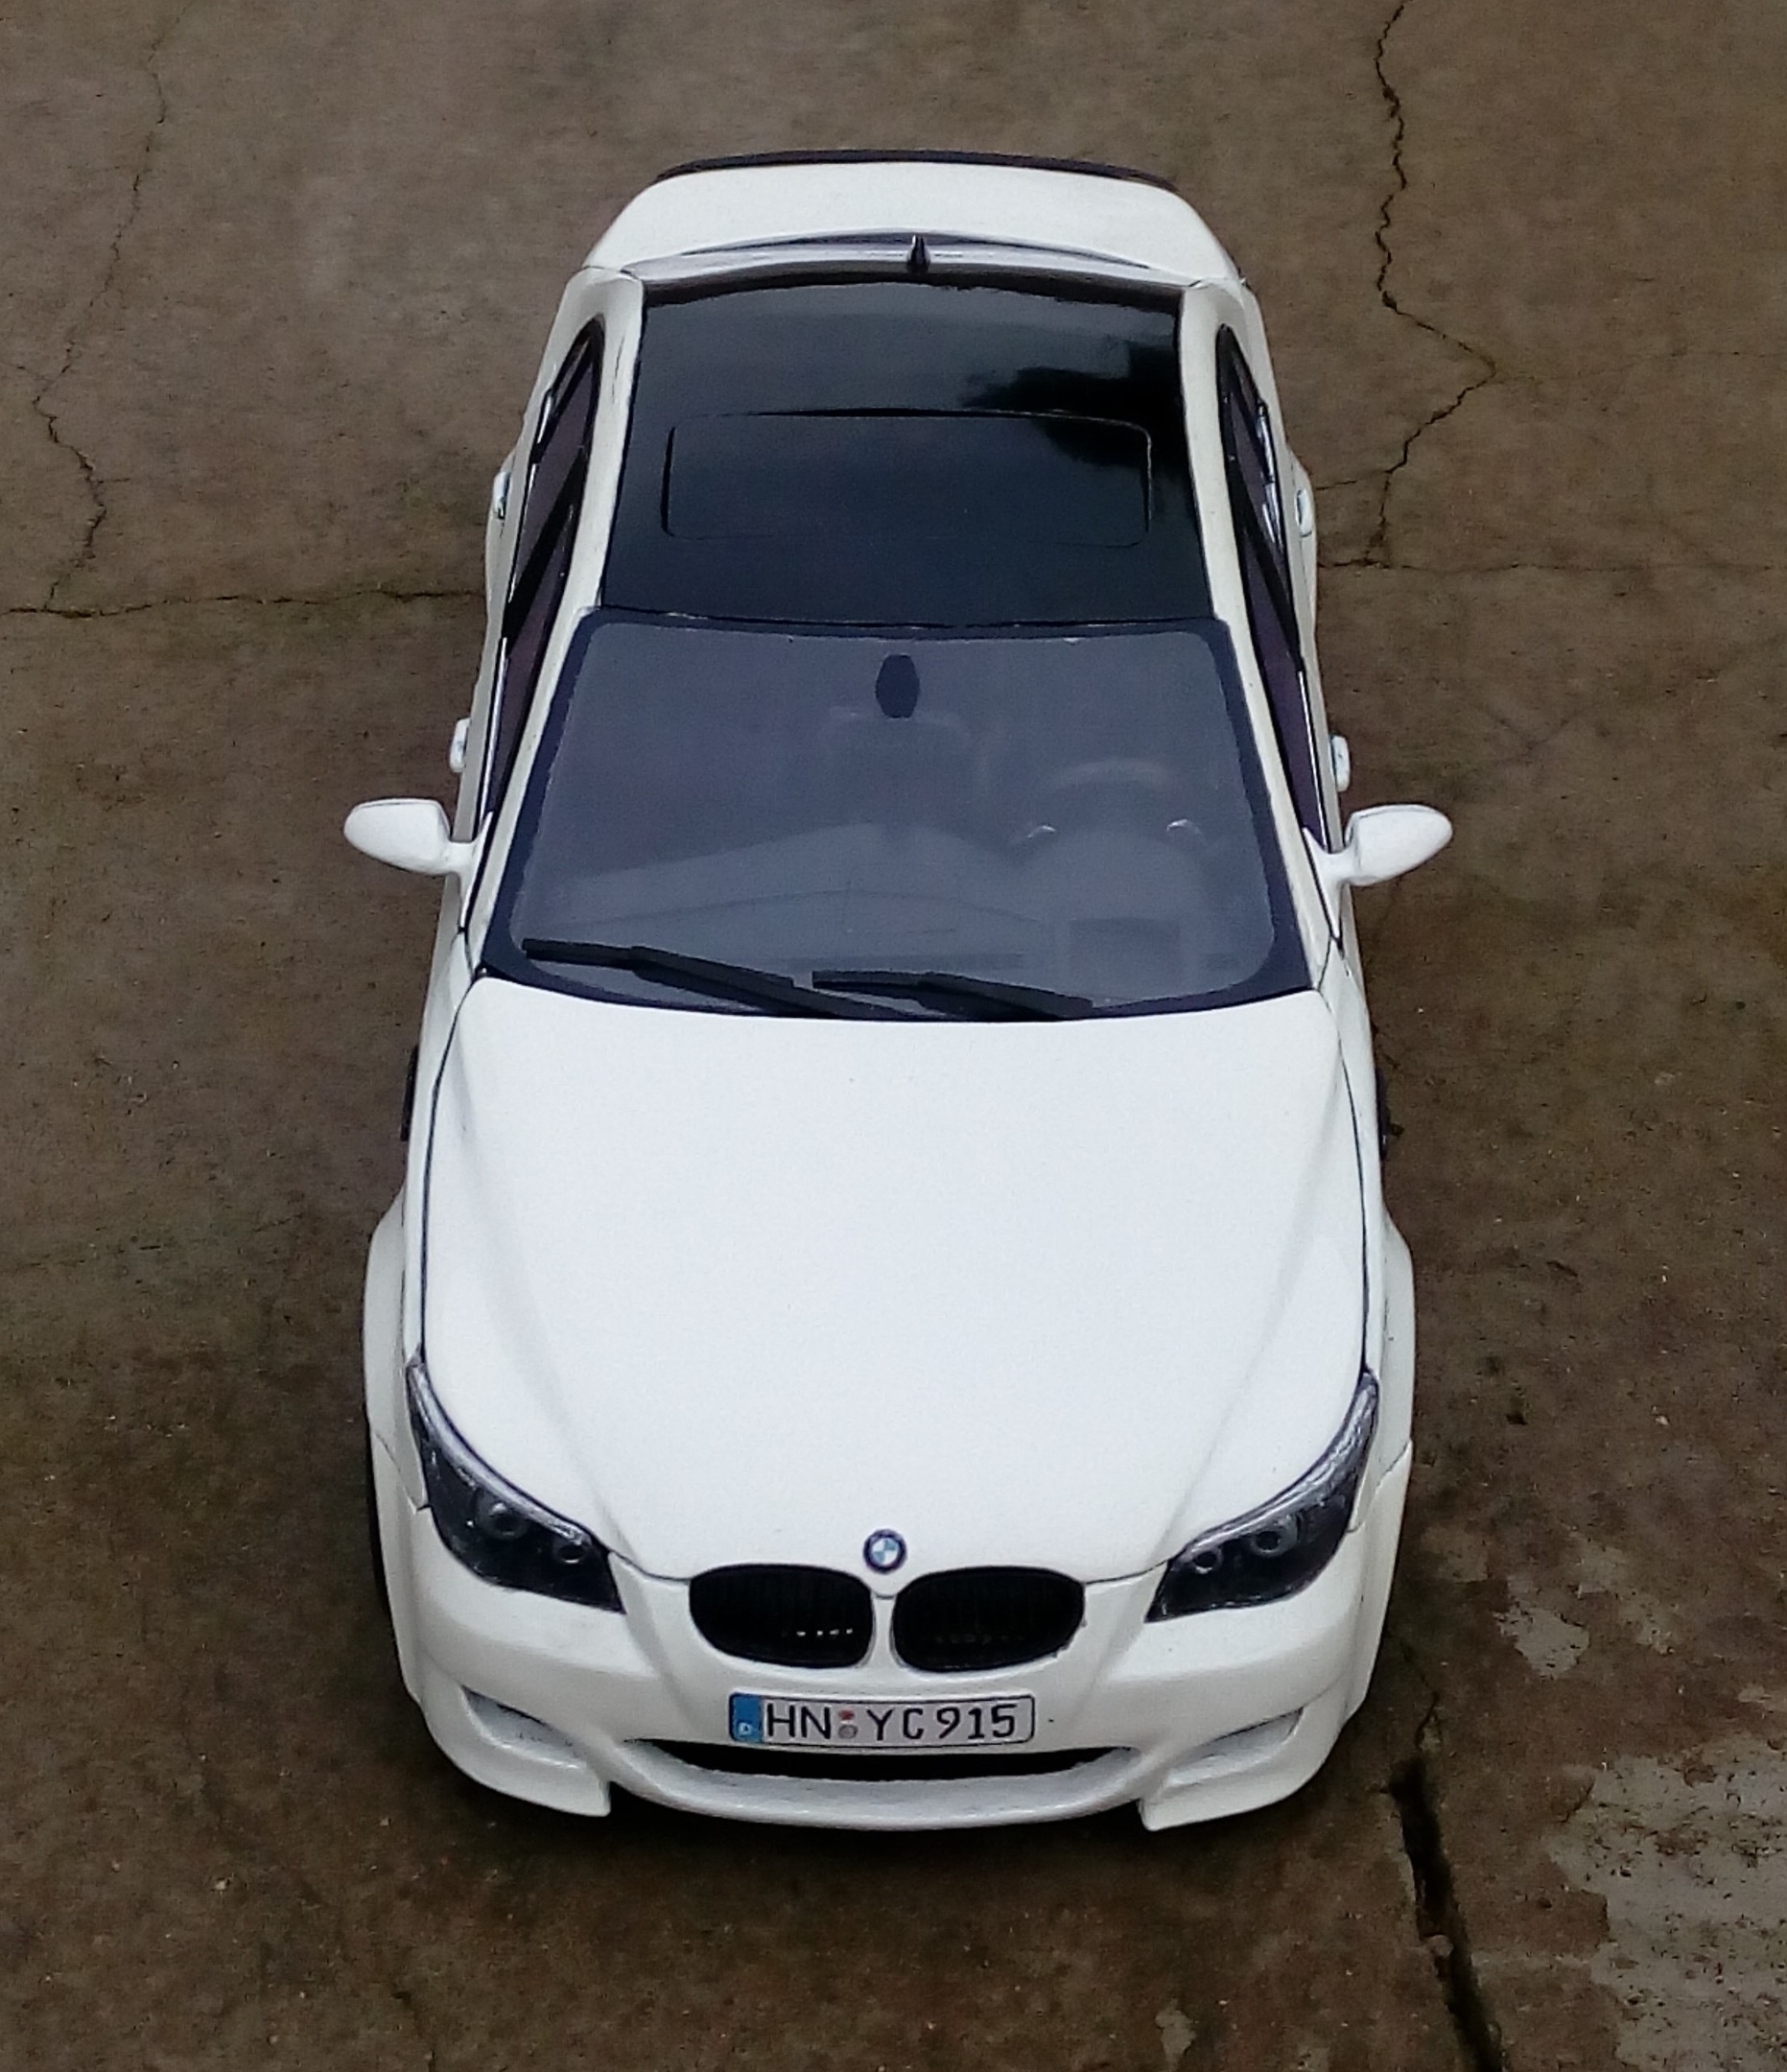 Доклад: BMW: модели